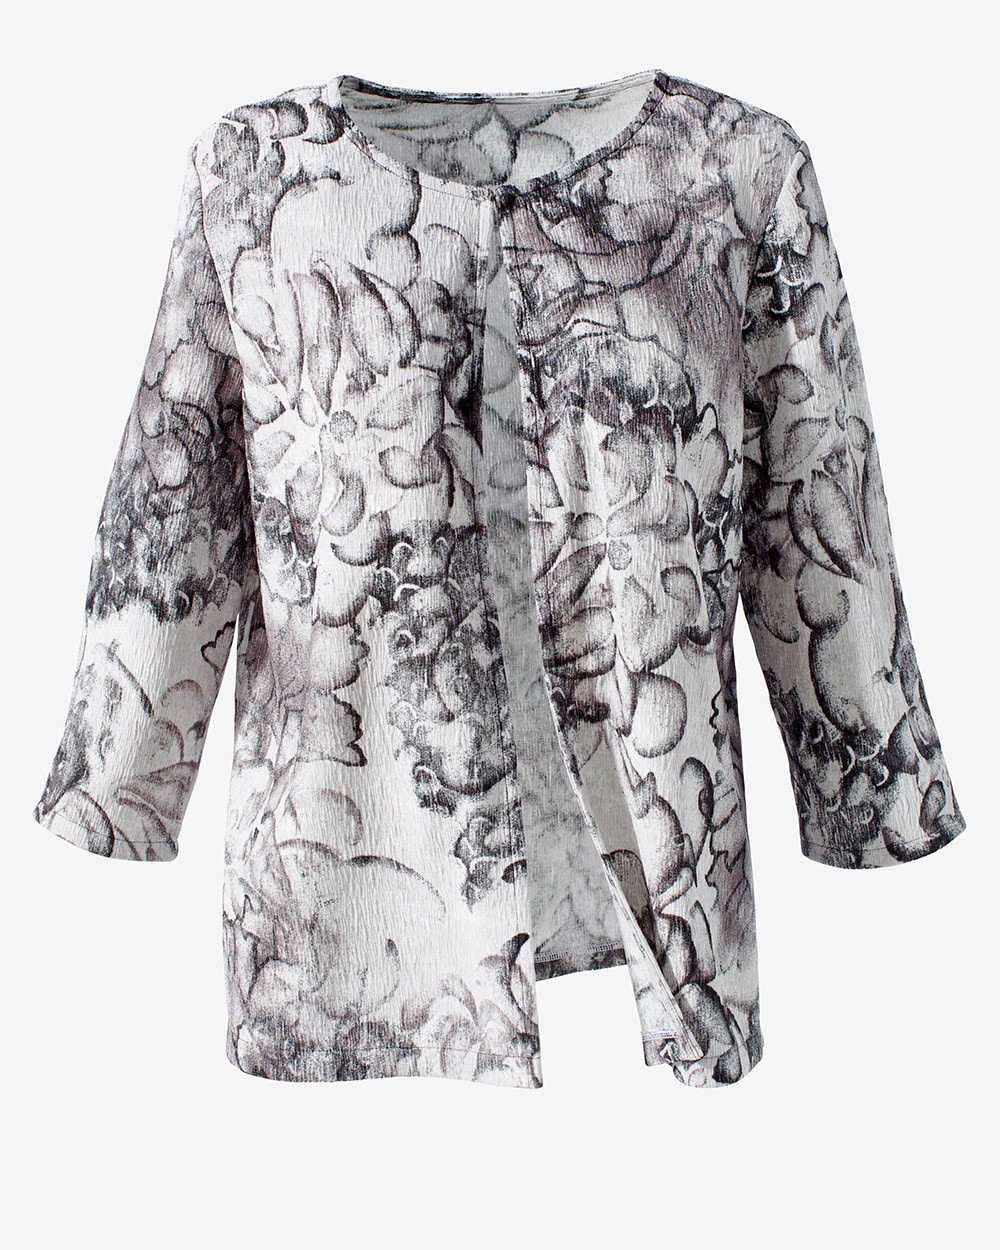 Easywear Annual Bloom Crinkle Texture Jacket